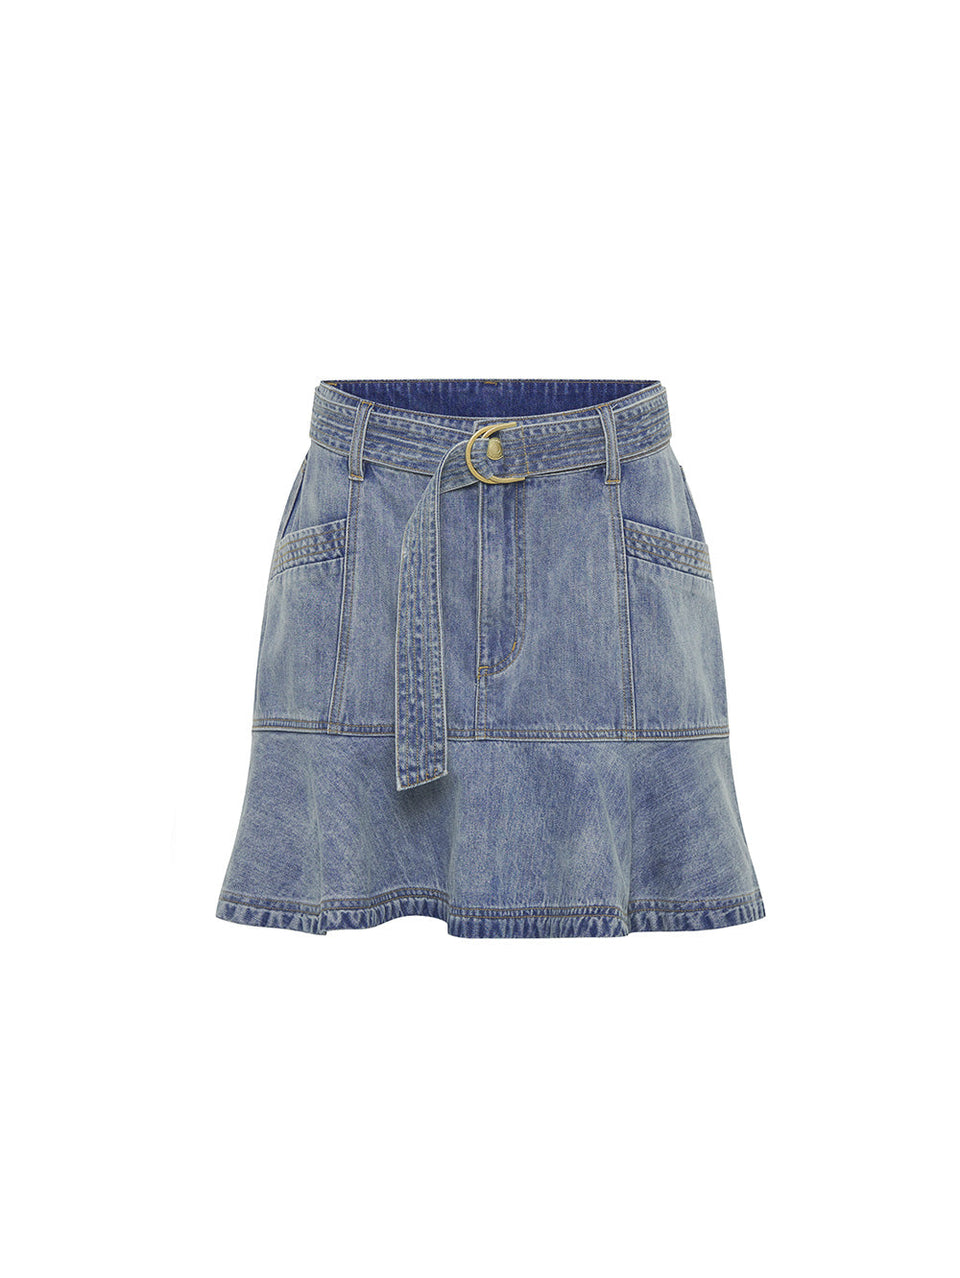 Theo Mini Skirt KIVARI | Light blue denim skirt